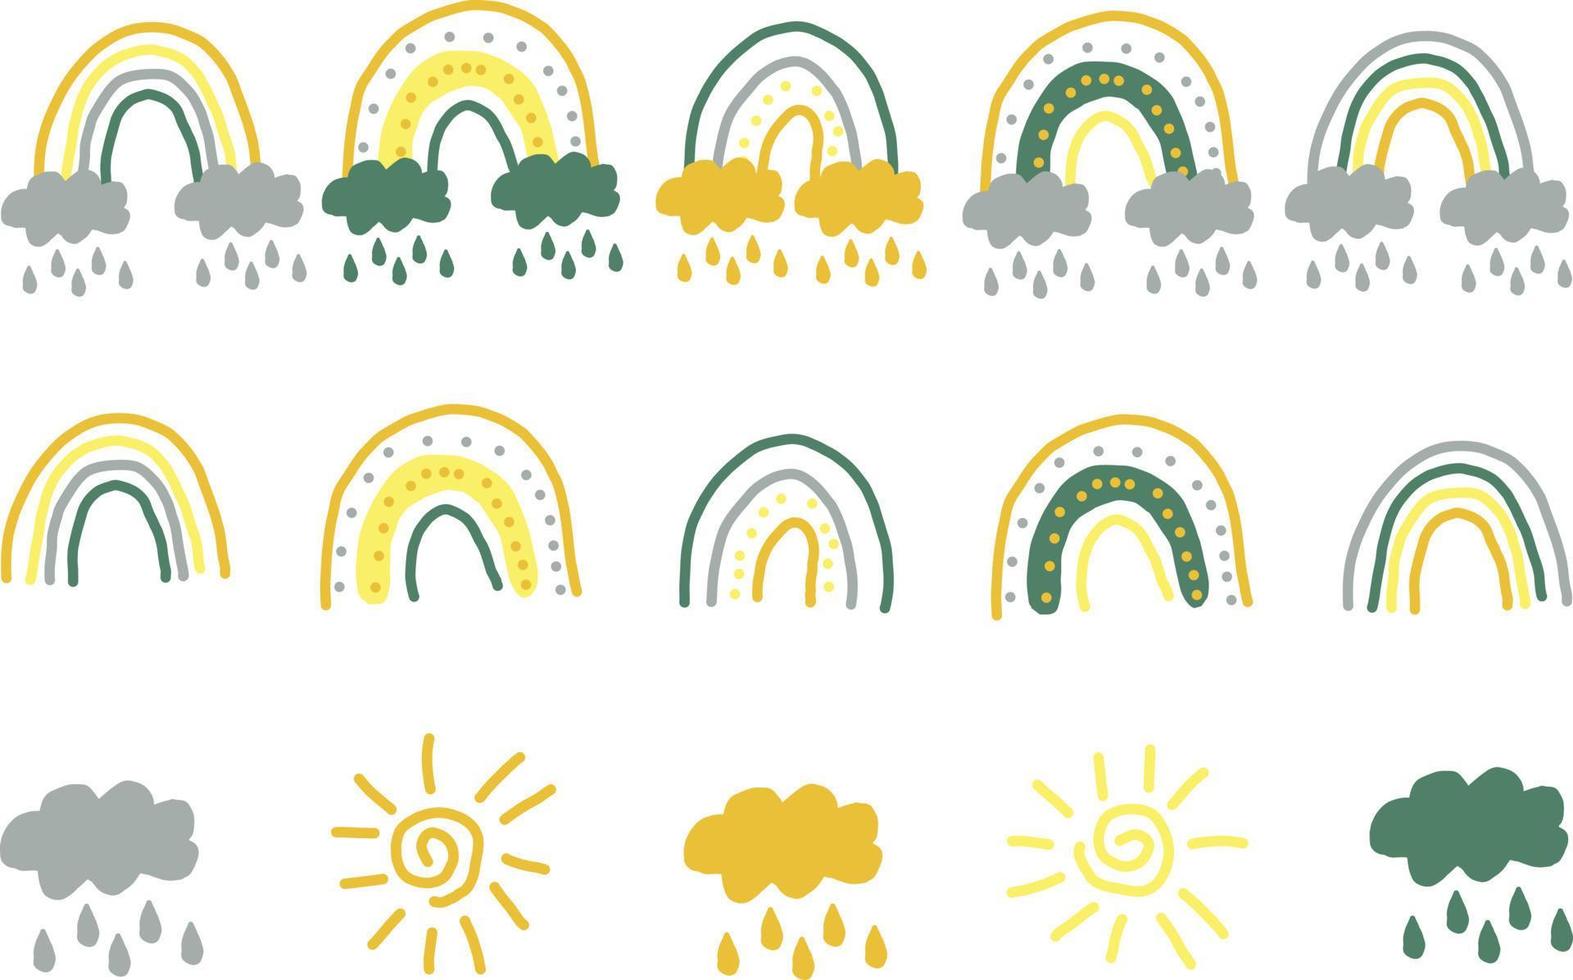 abstrakter handgezeichneter Regenbogen im Boho-Stil. trendfarben.doodle vektor